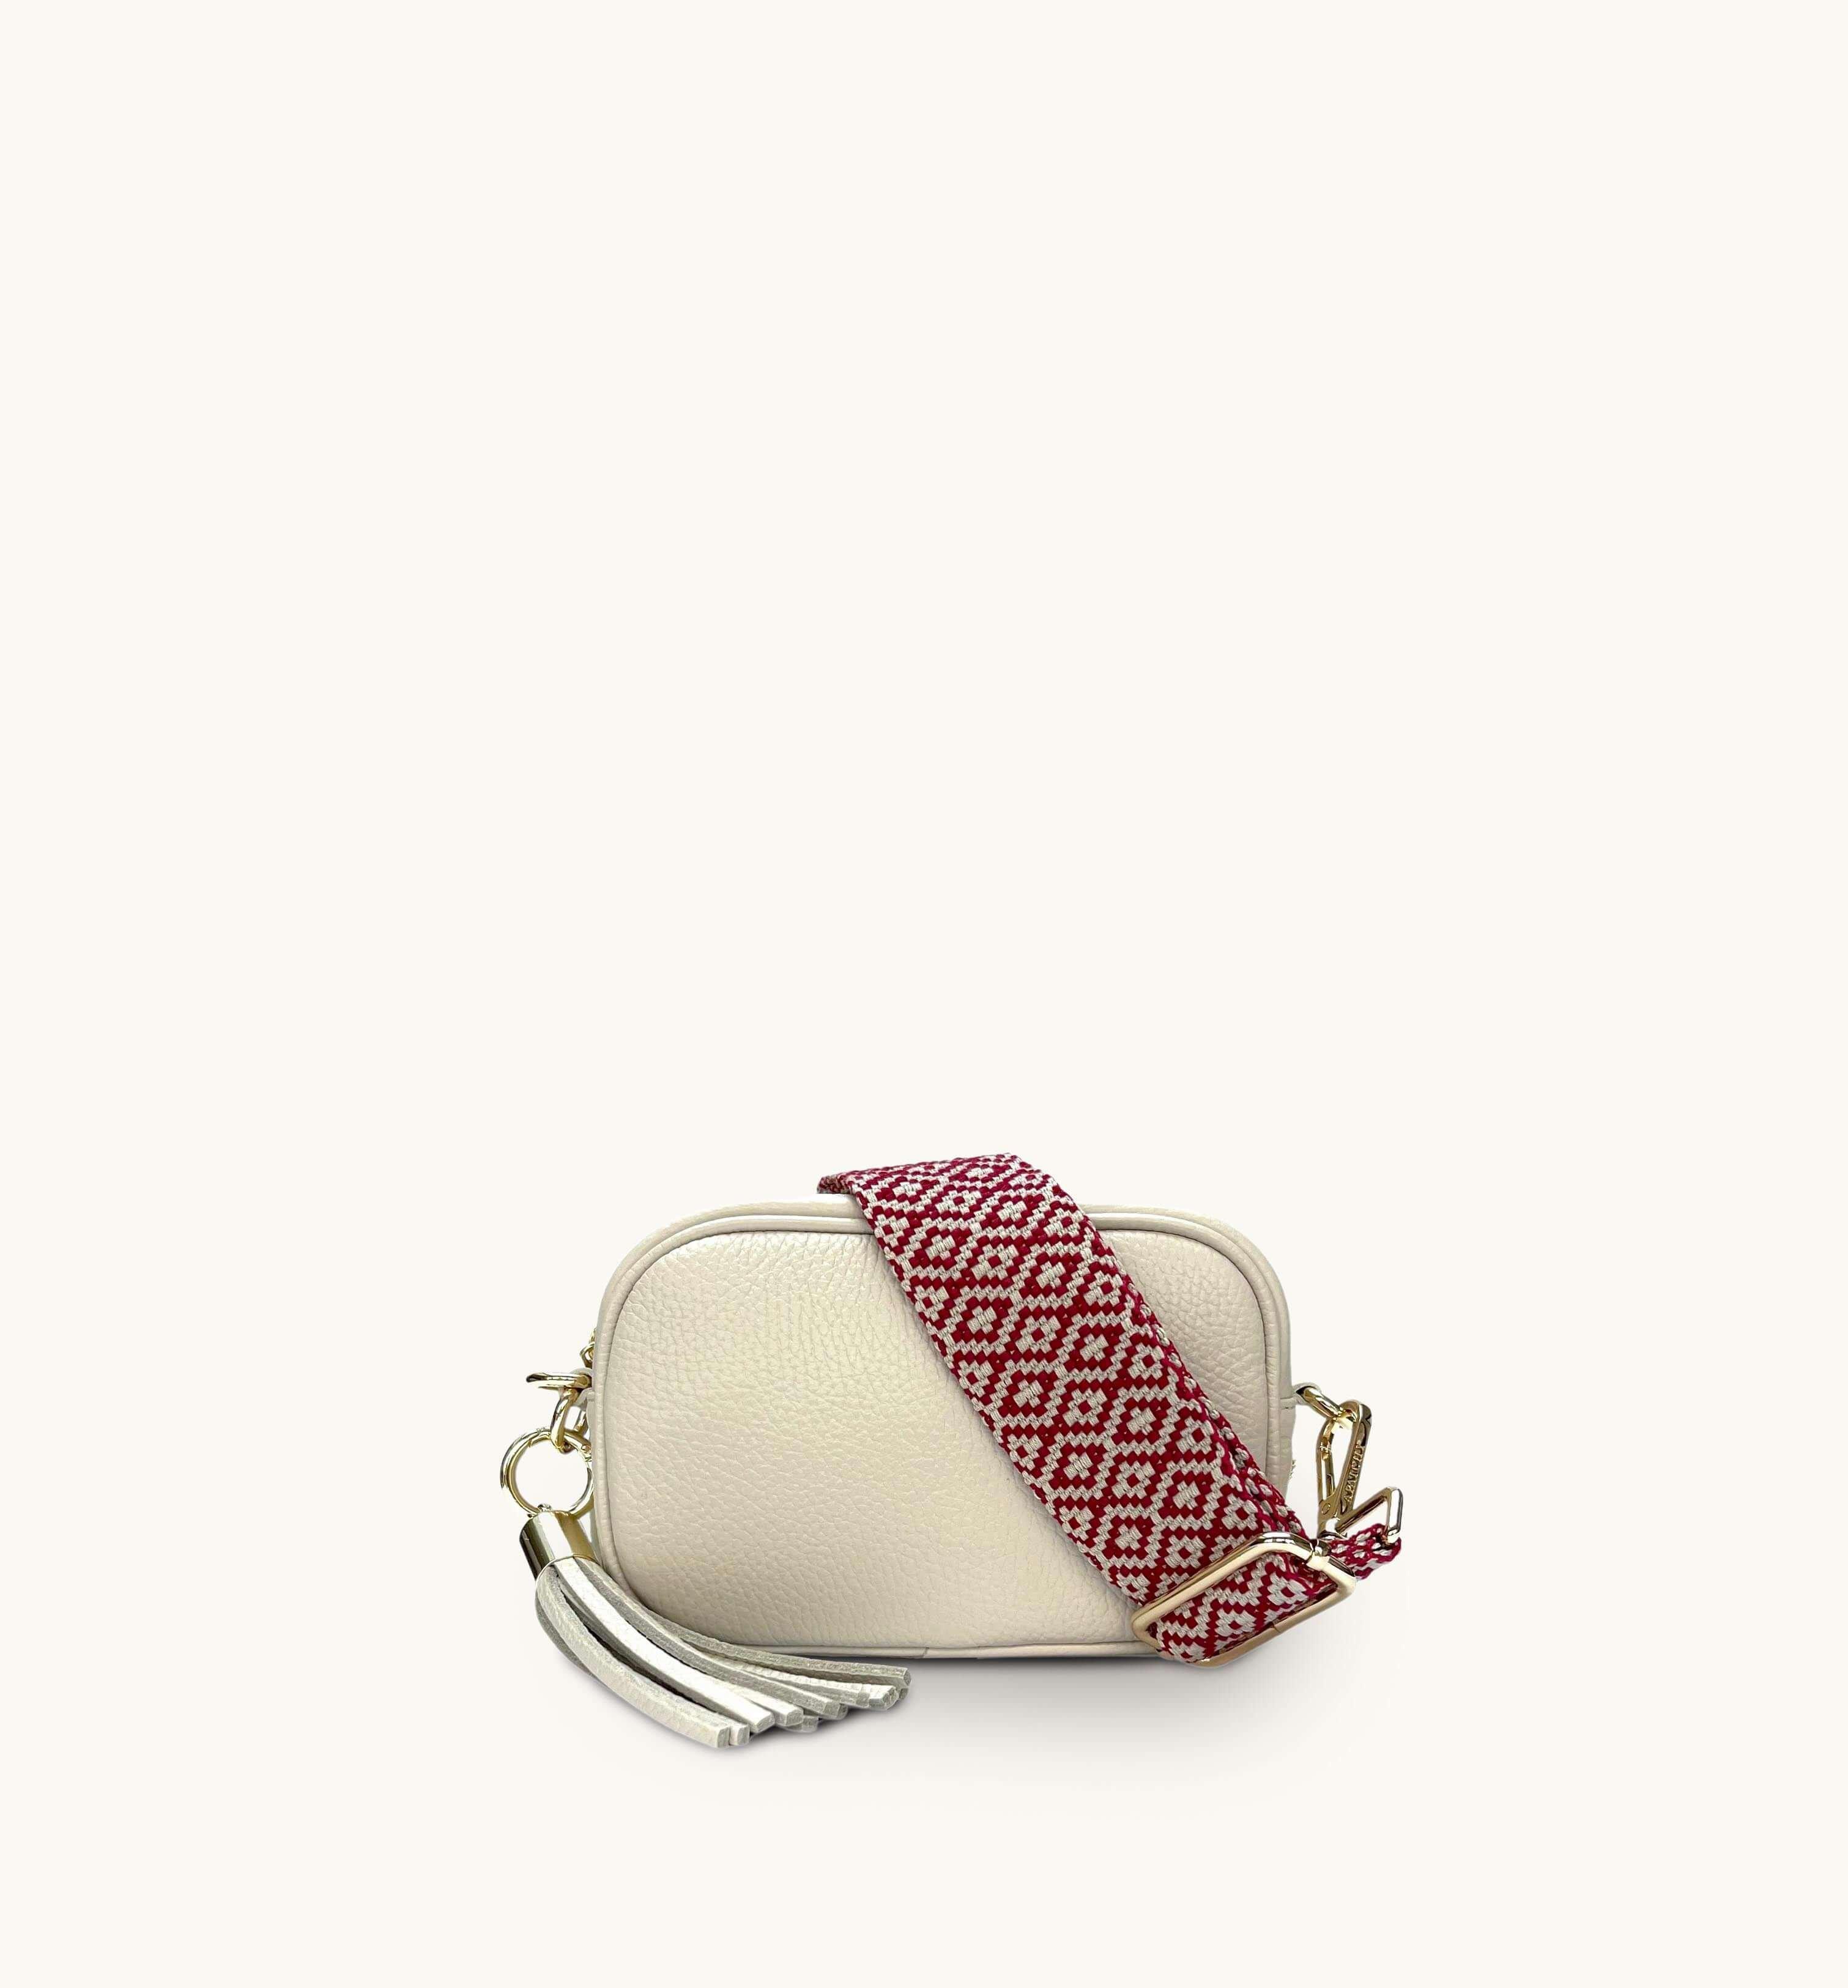 Кожаная сумка для телефона Mini с кисточками и ремешком с красной вышивкой крестиком Apatchy London, бежевый